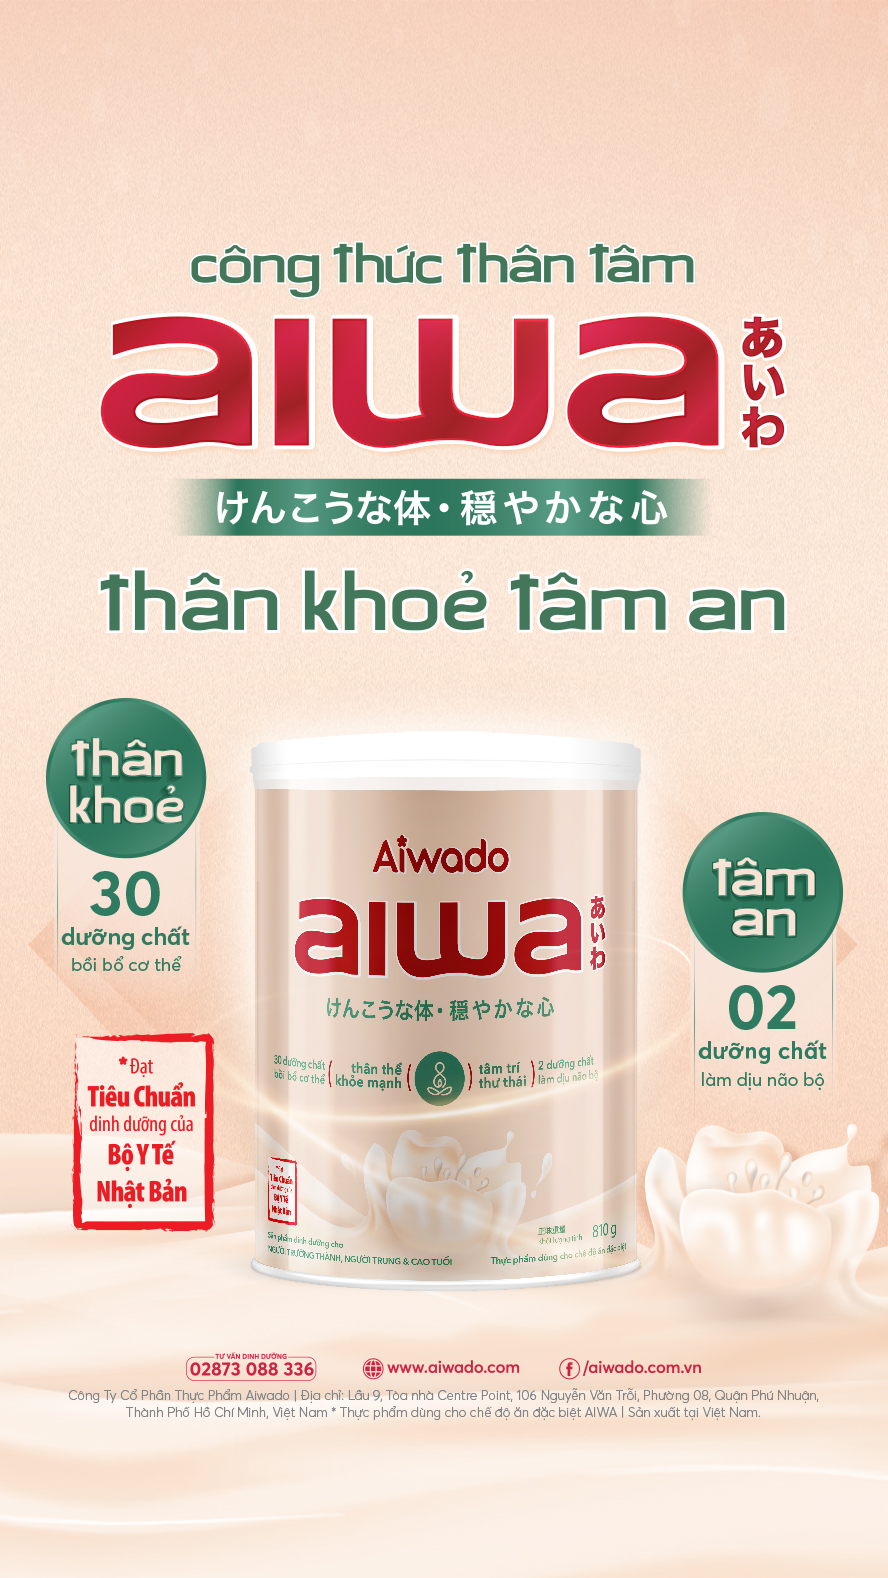 Aiwa - Sữa cho thân khỏe tâm an